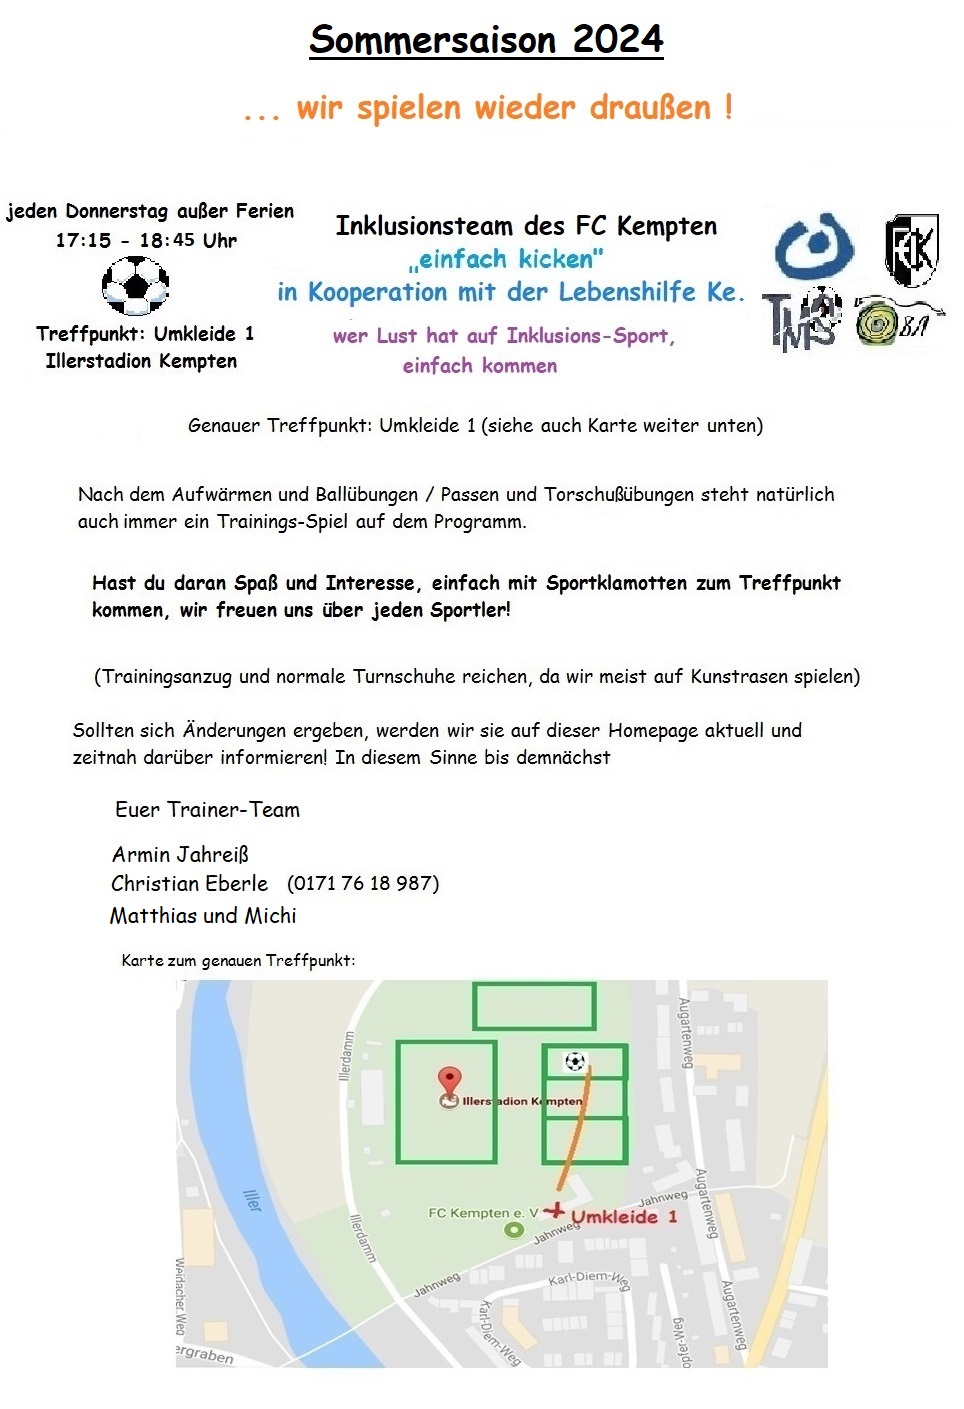 zur Homepage des FC Kempten !